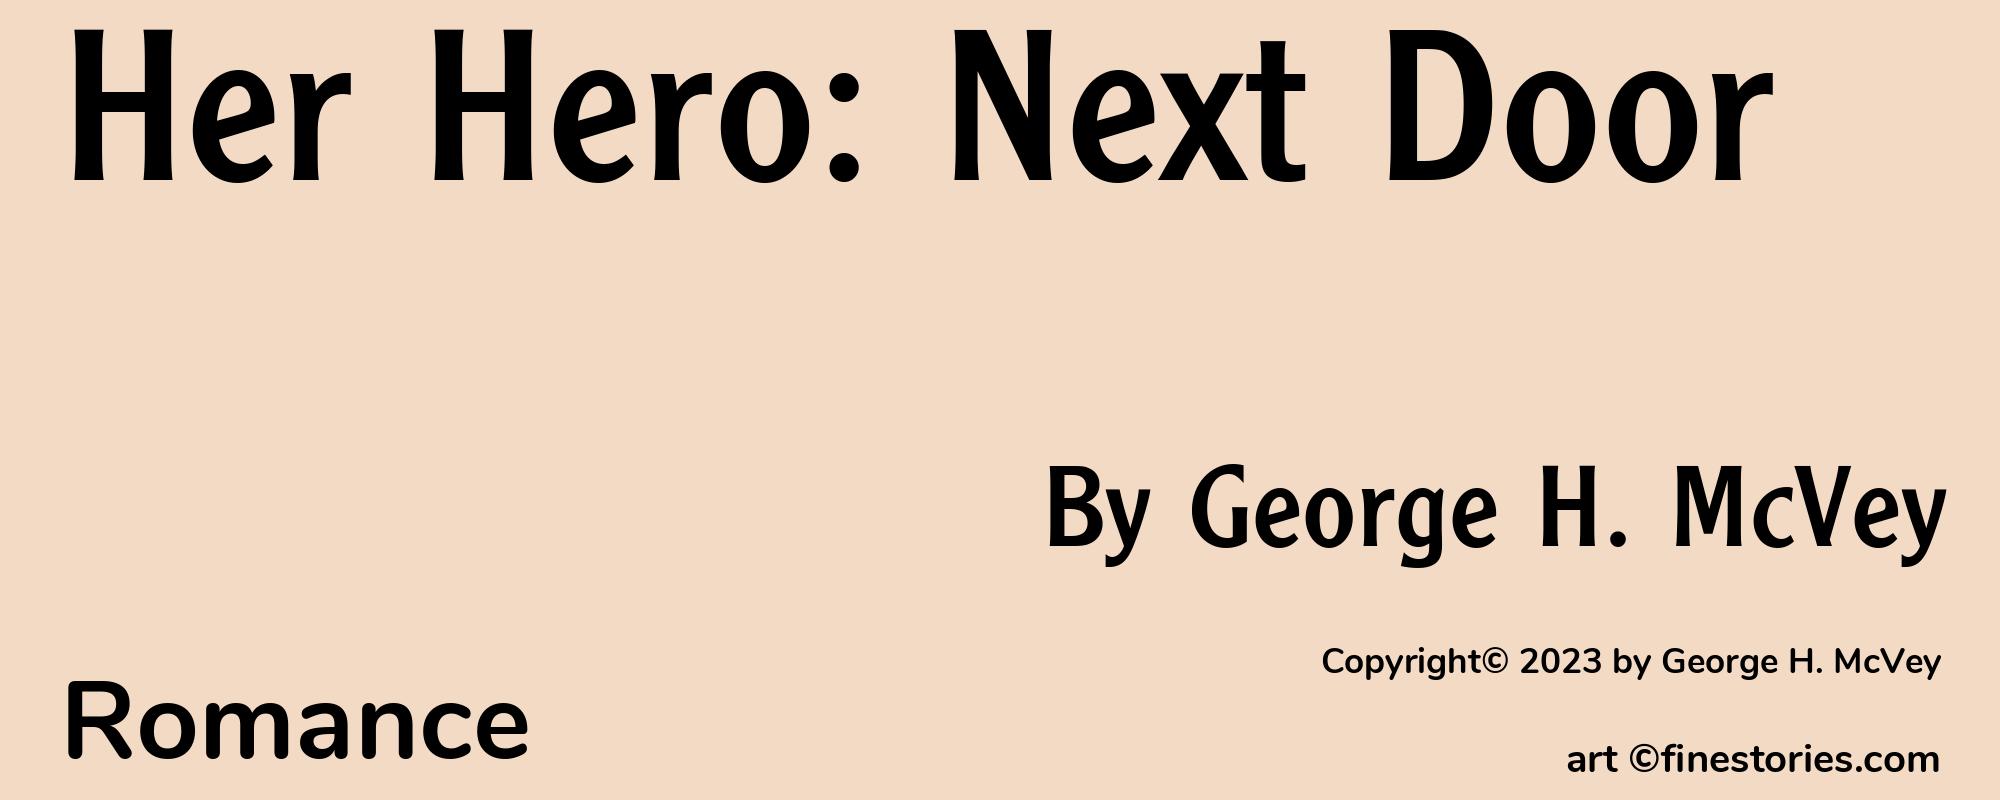 Her Hero: Next Door - Cover